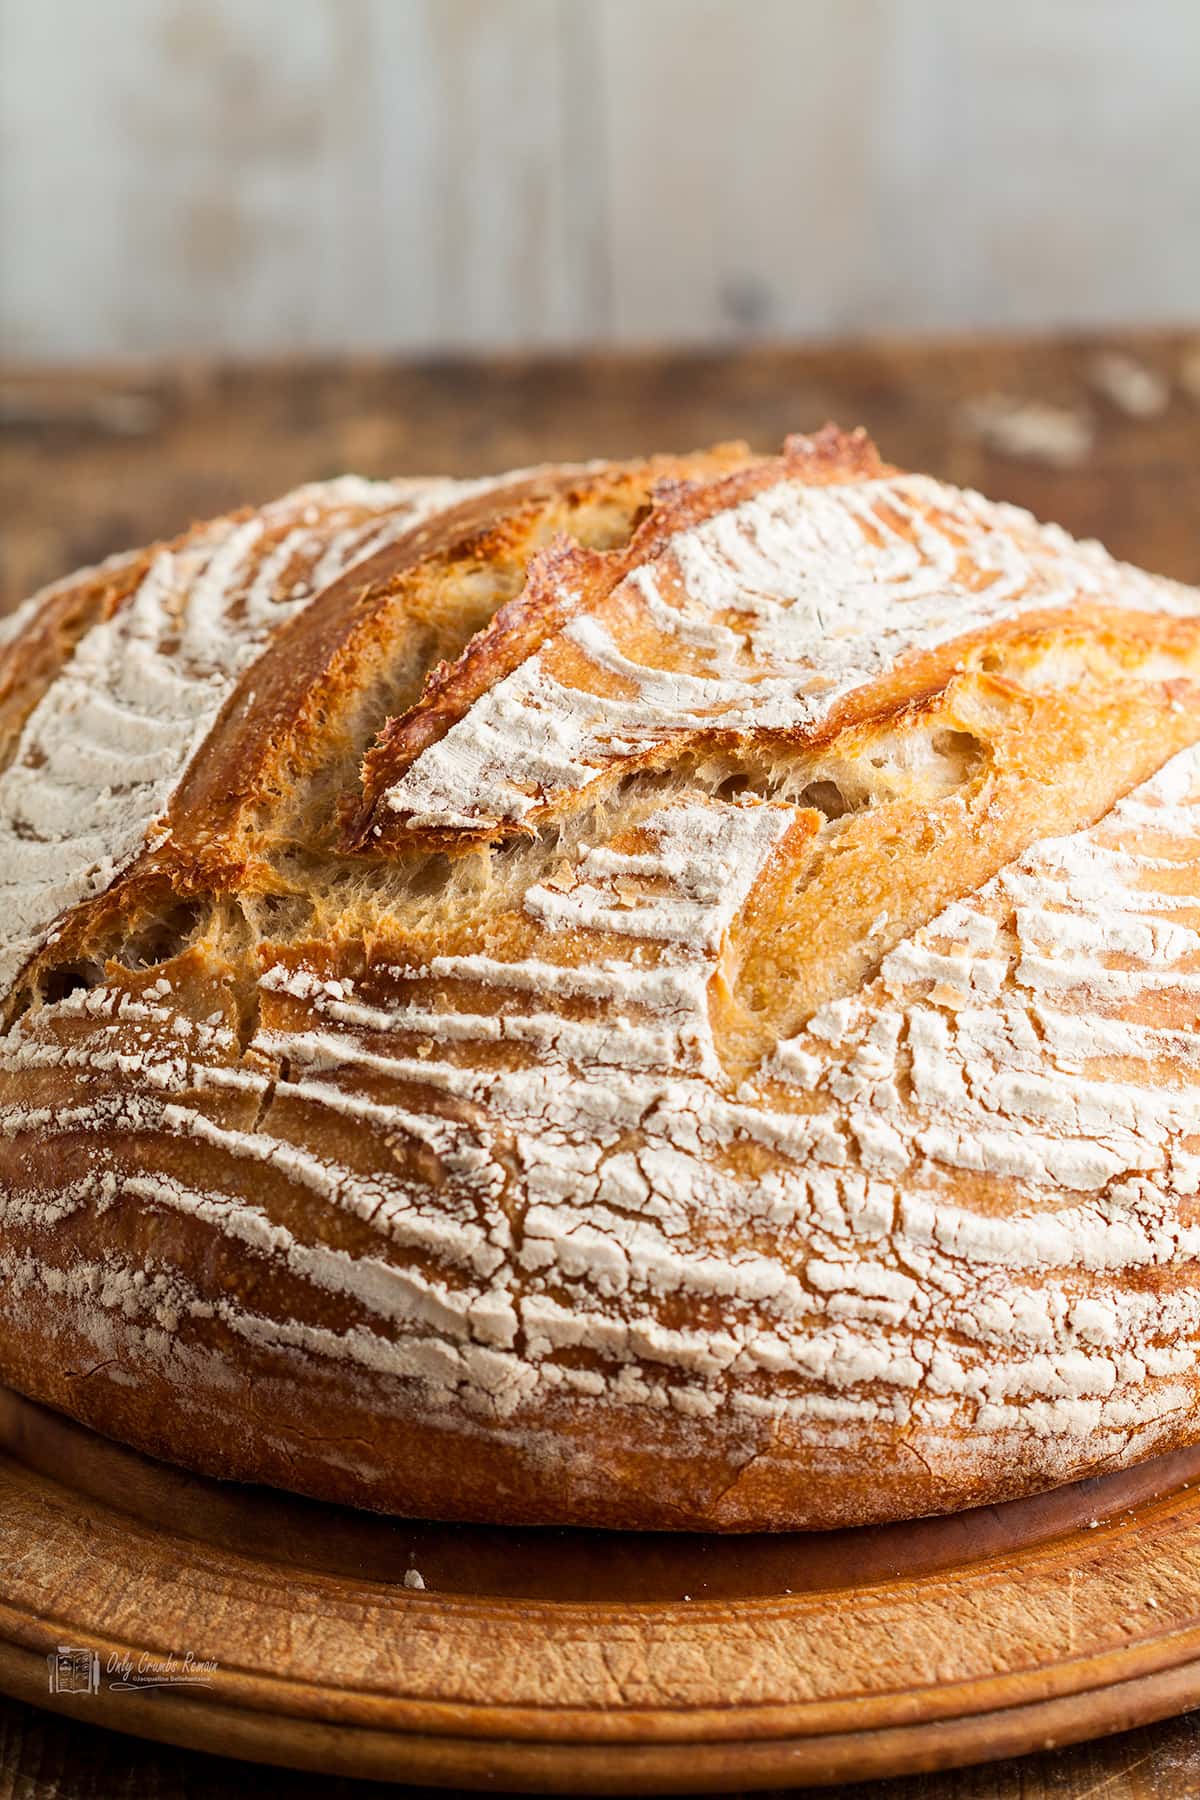 Quick and Easy No-knead Sourdough Discard Bread - Make It Dough